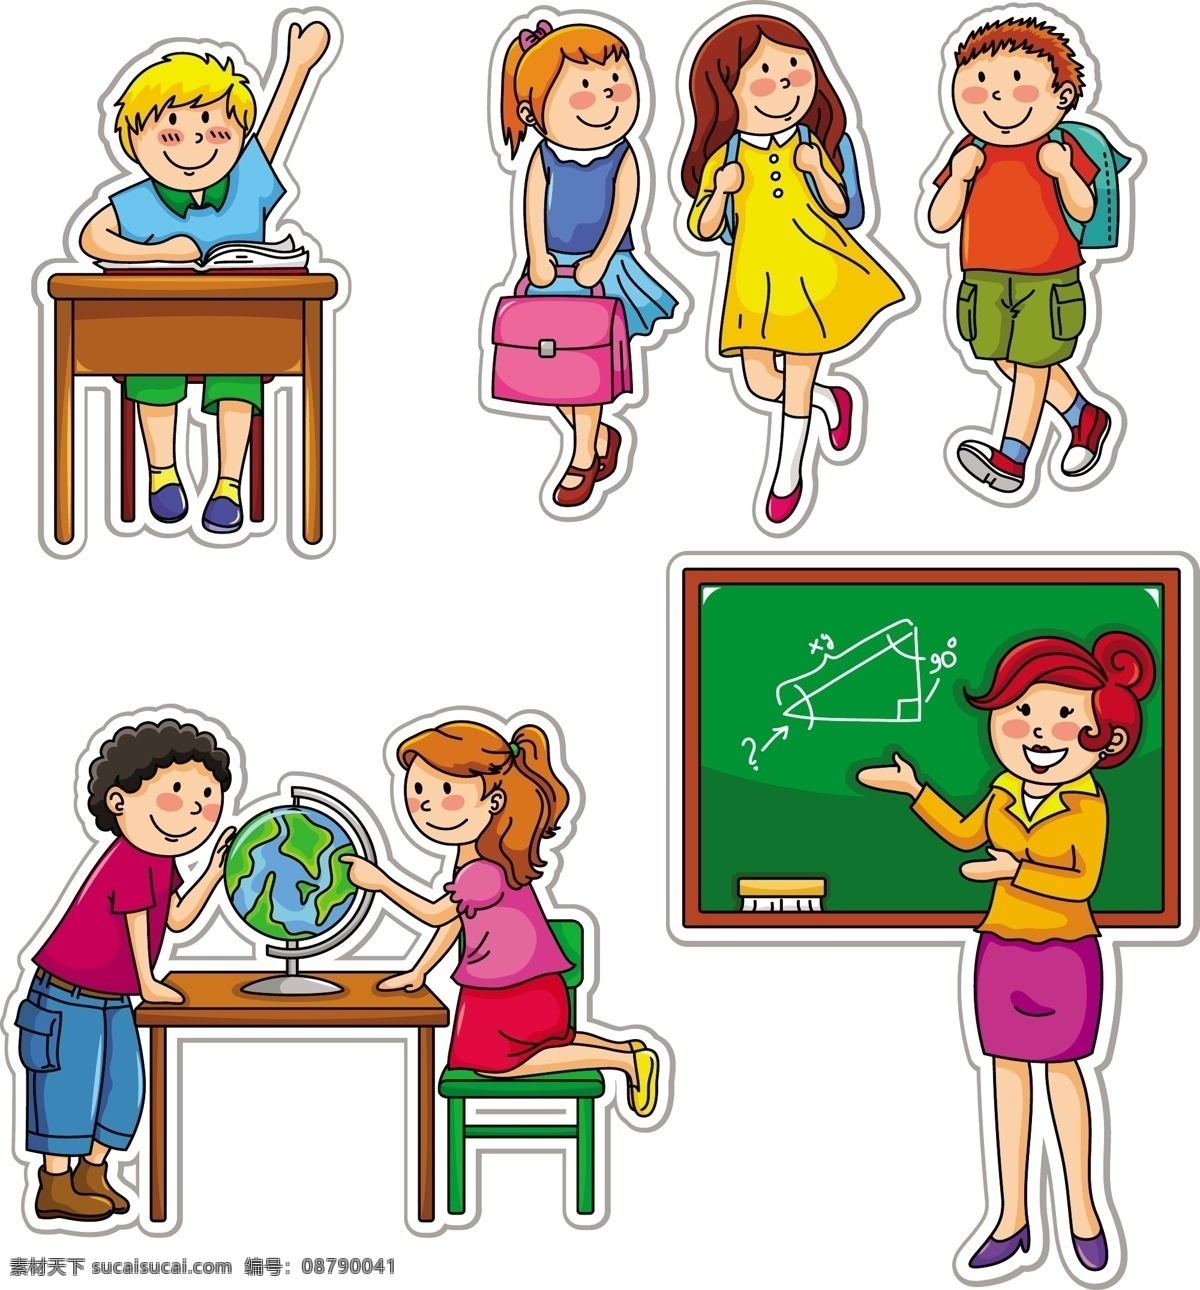 卡通 儿童 插画 矢量 标签 插图 黑板 欢乐 举手 卡贴 可爱的 老师 书包 椅子 桌子 孩子们 全球的 贴纸 学生 矢量图 矢量人物